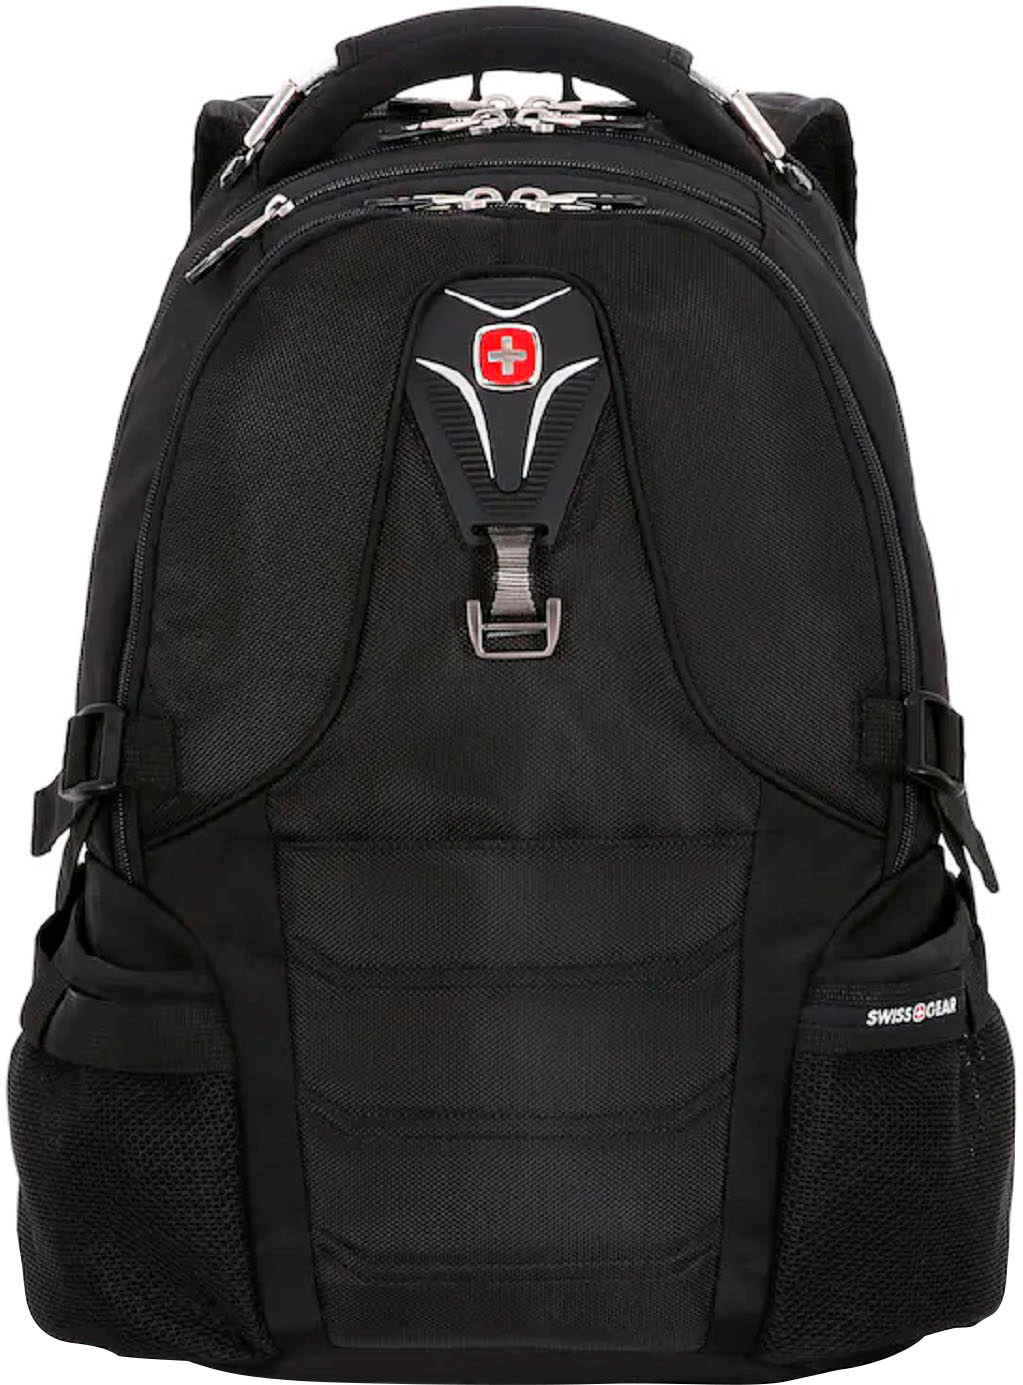 SwissGear 2769 ScanSmart Laptop Backpack Black 2769202409 - Best Buy